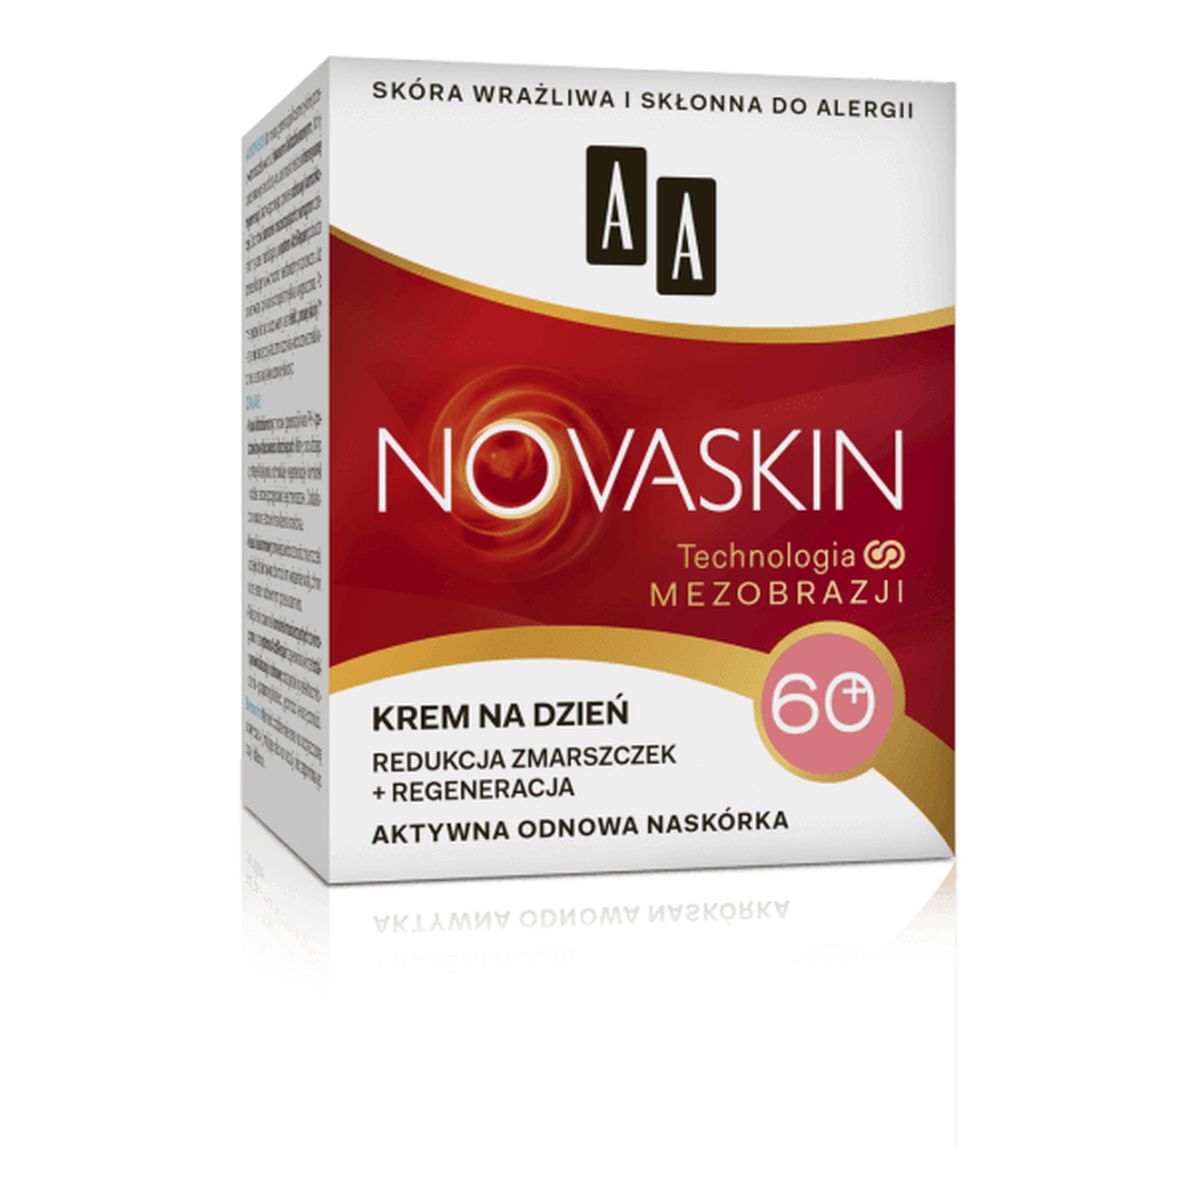 AA Novaskin 60+, Krem na dzień - redukcja zmarszczek + regeneracja, cera dojrzała, 50ml